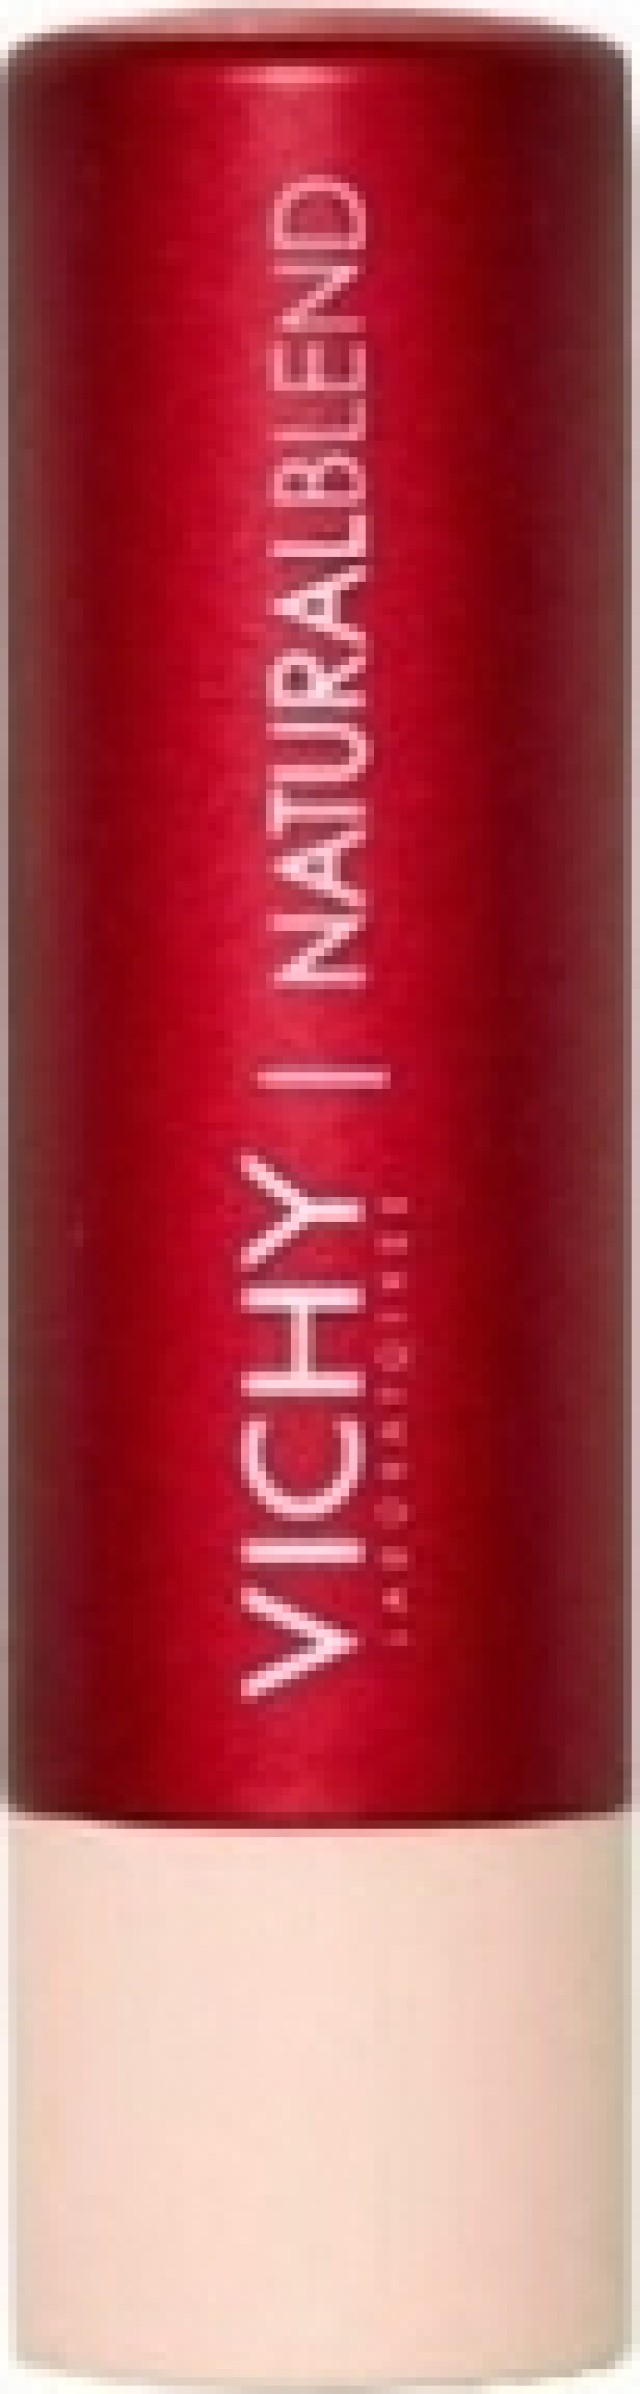 Vichy NaturalBlend Lip Balm με Χρώμα Red 4.5gr